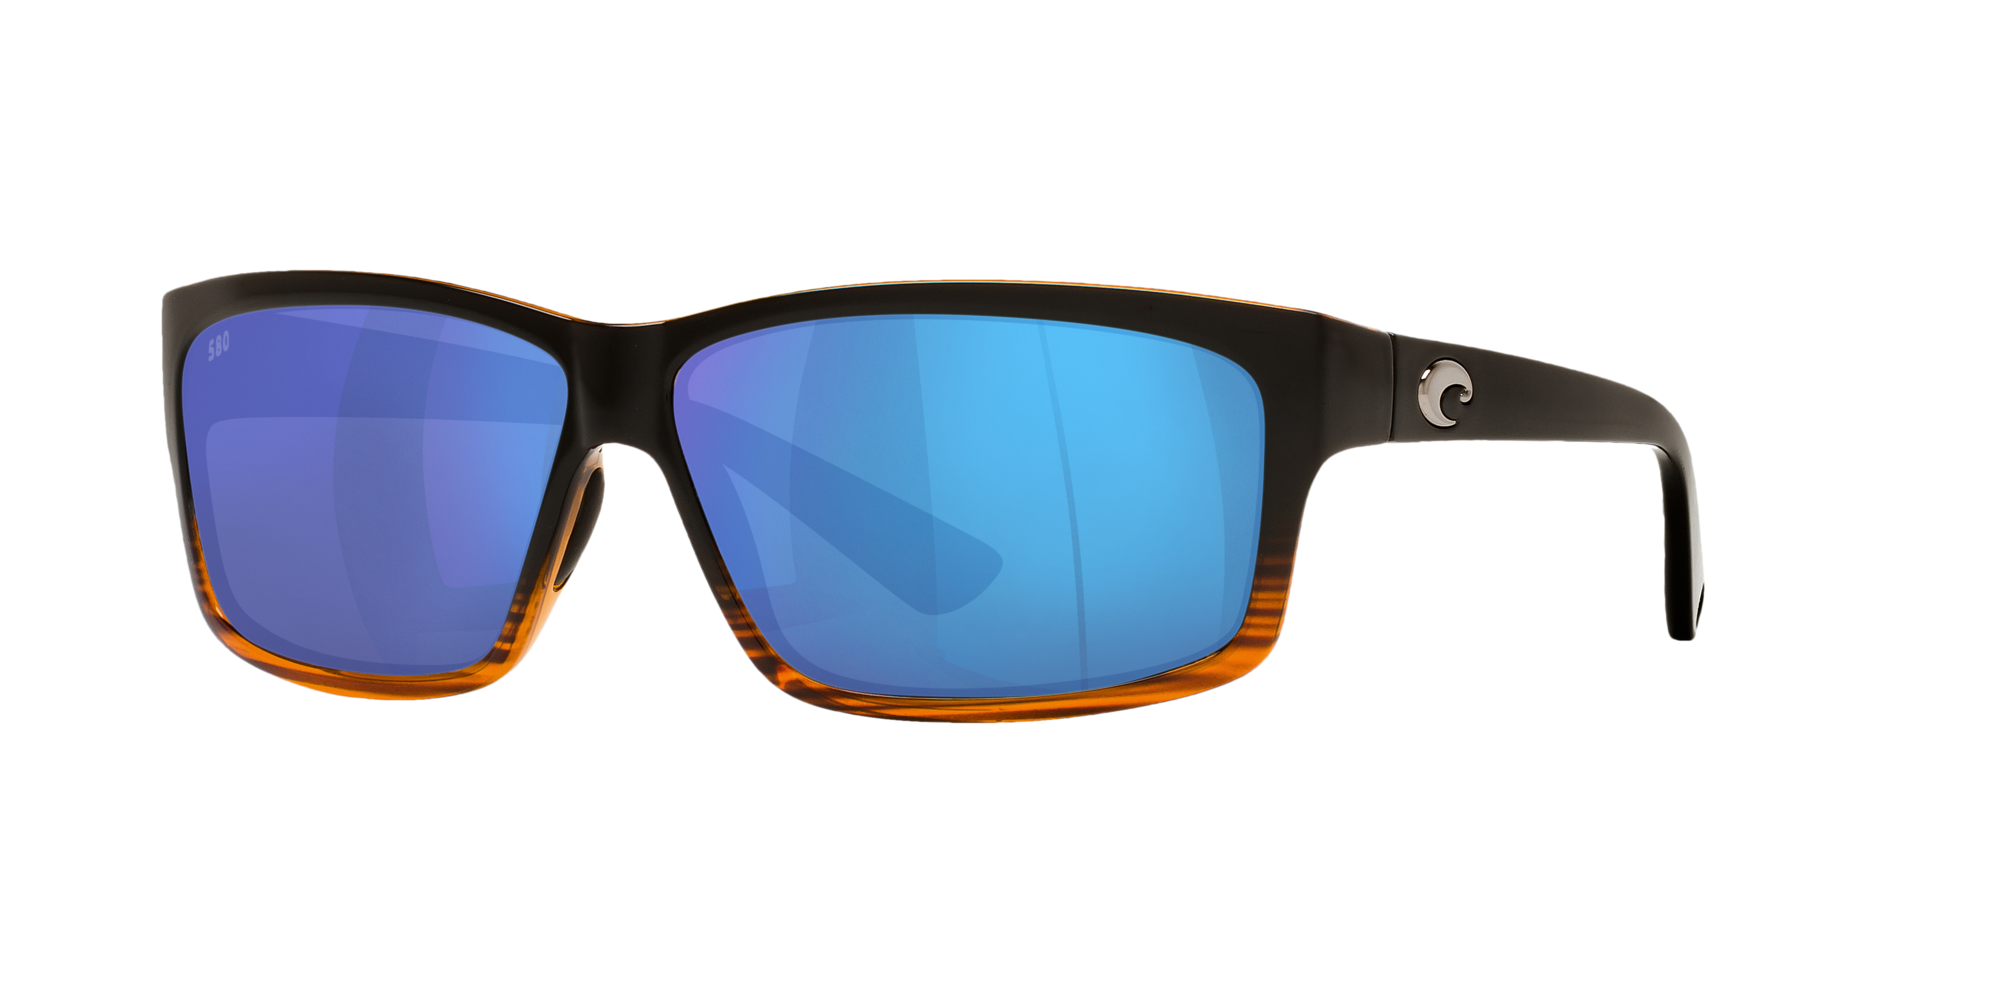 COSTA DEL MAR La Mar 580P POLARIZED Sunglasses Womens Wood Fade/Blue Mirror NEW 